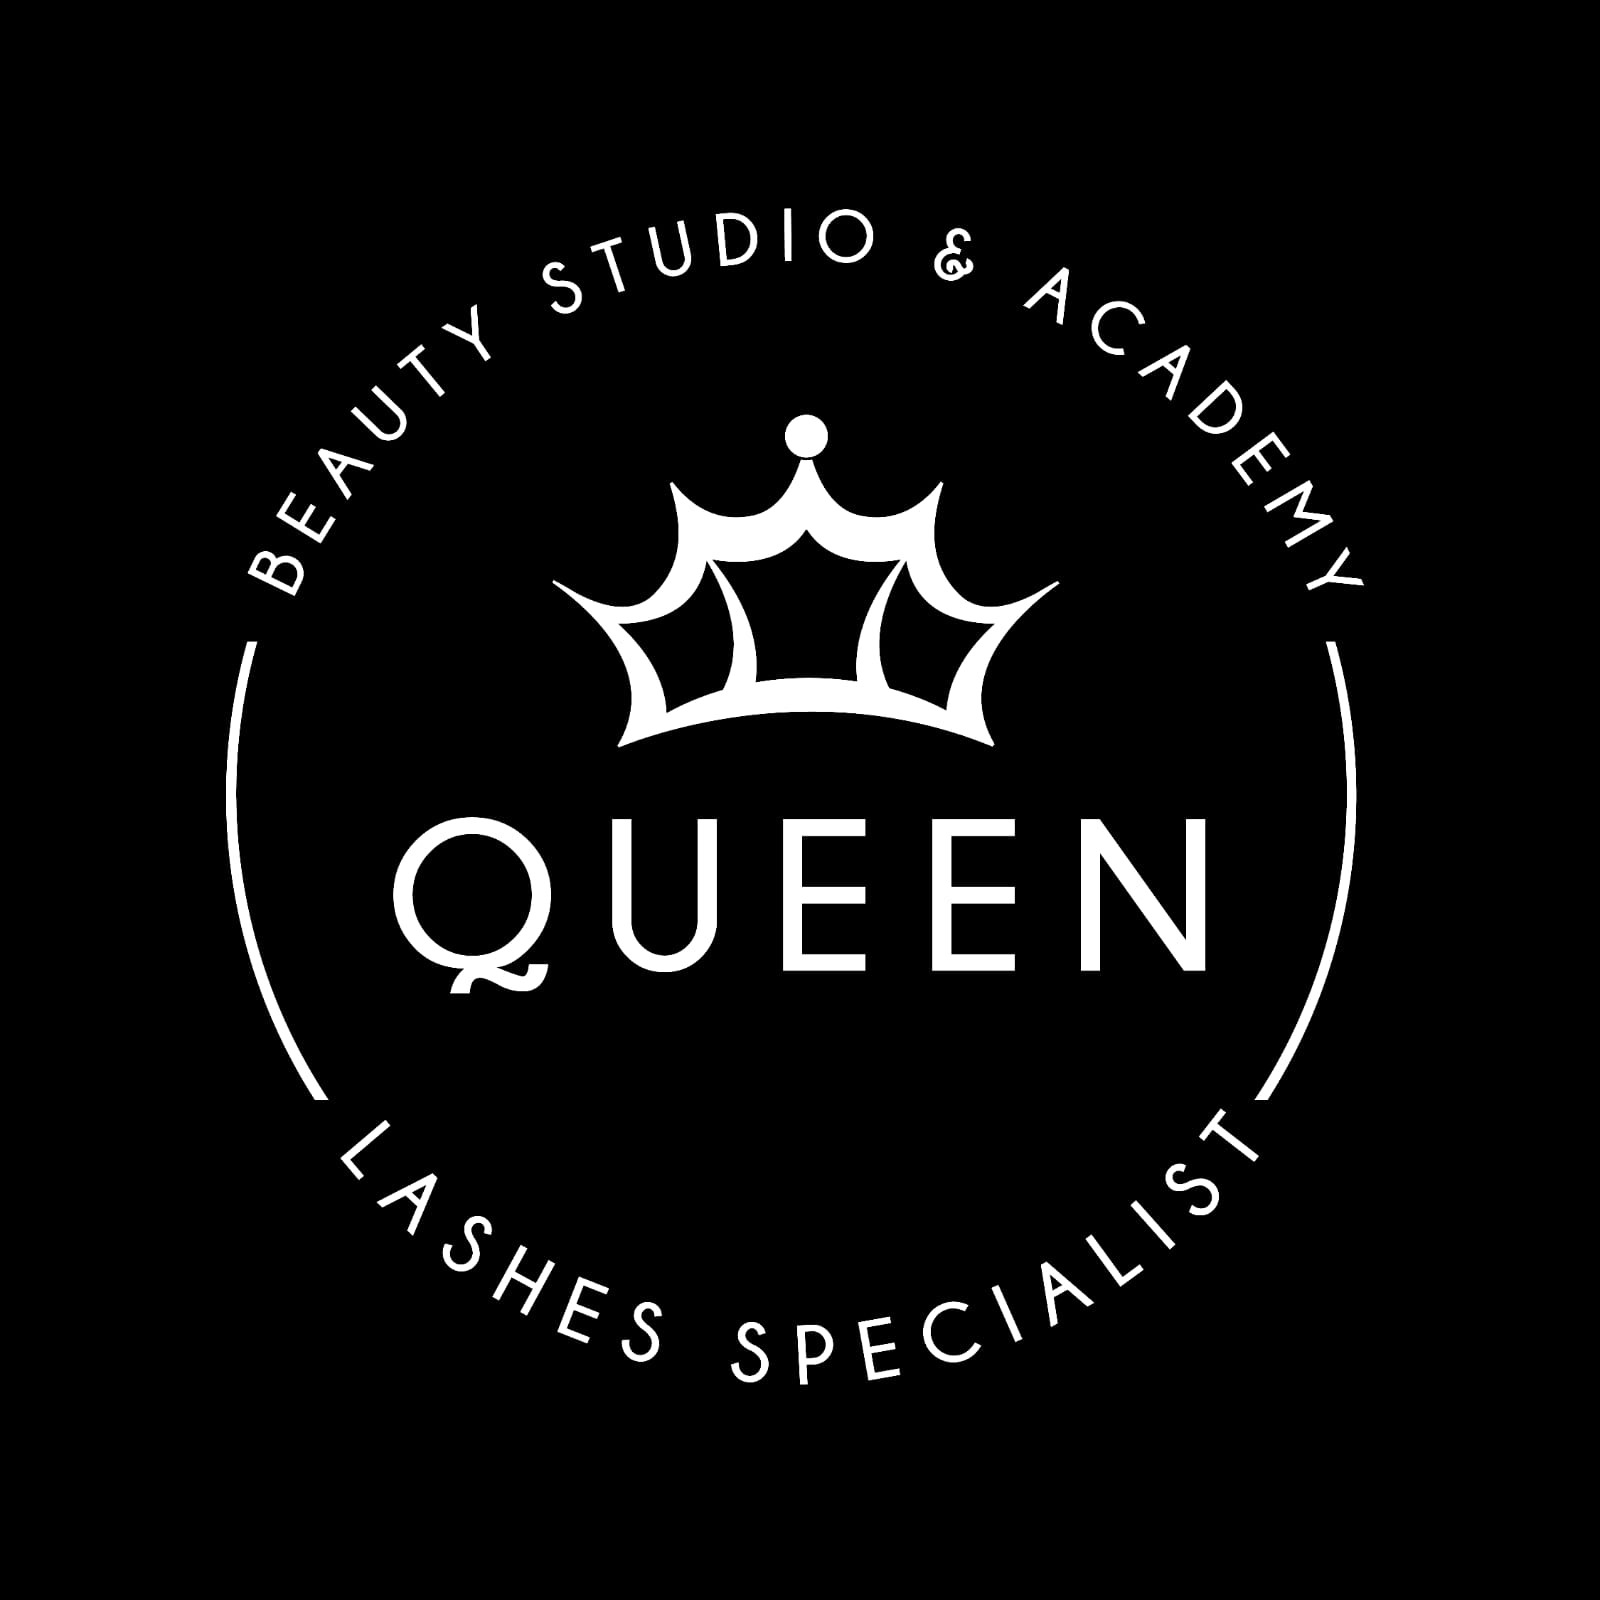 My Queen Studio Design de Beleza LTDA 31882082000179